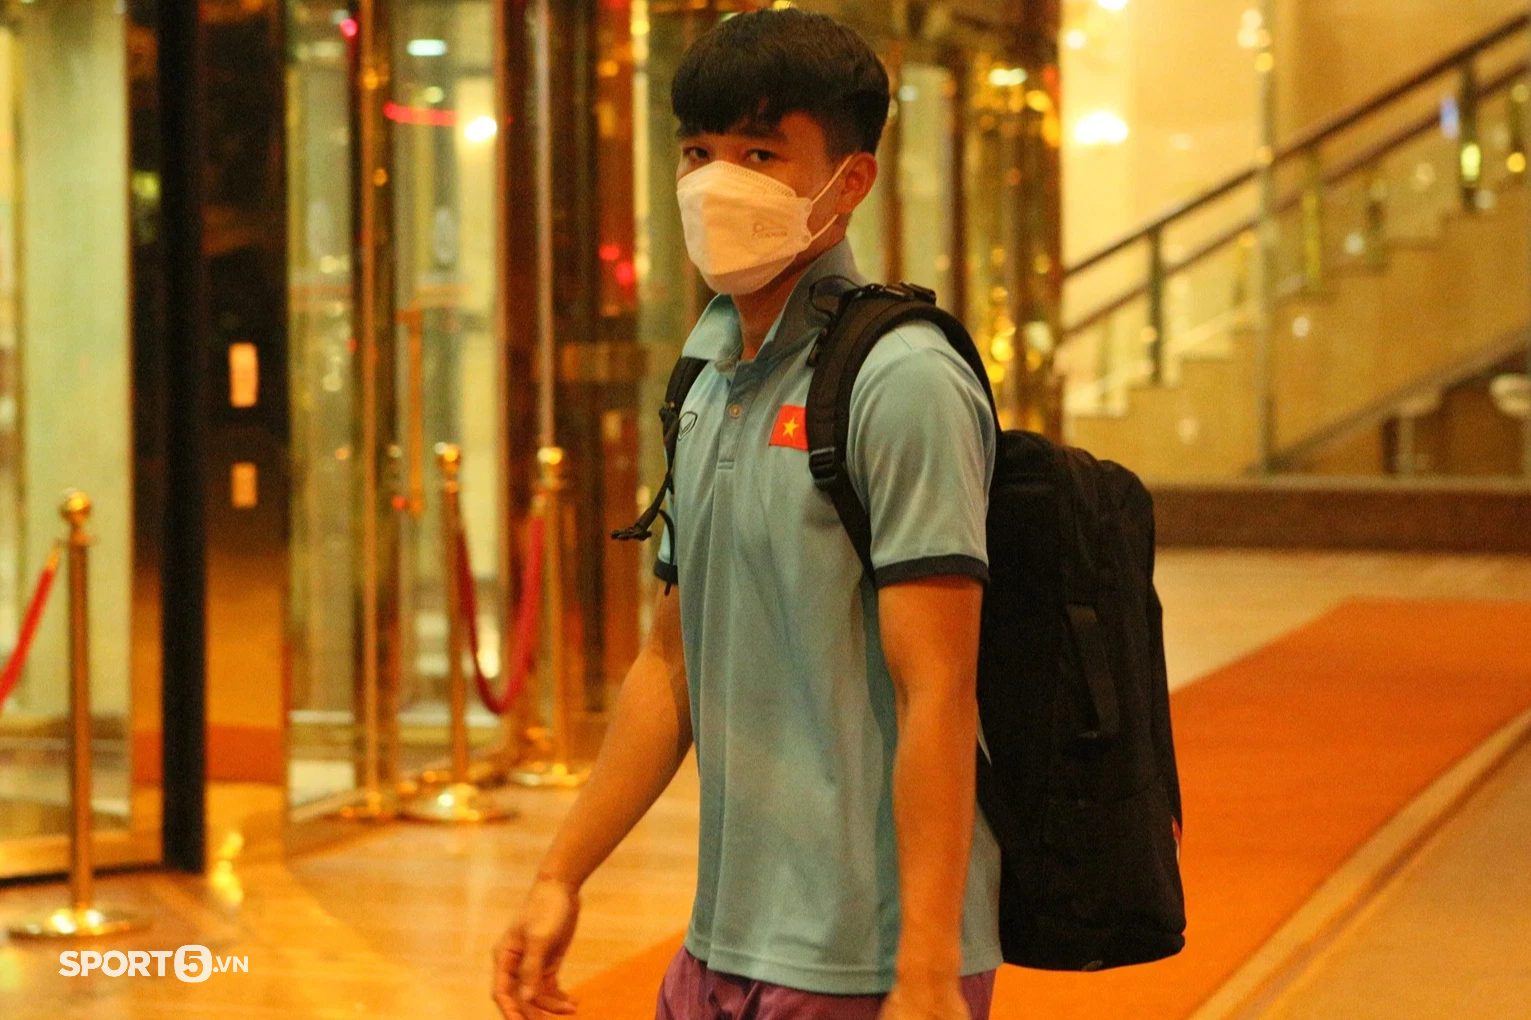 U23 Việt Nam trở về khách sạn với dáng vẻ mệt mỏi sau buổi tập luyện ngày 25/4 - Ảnh 8.